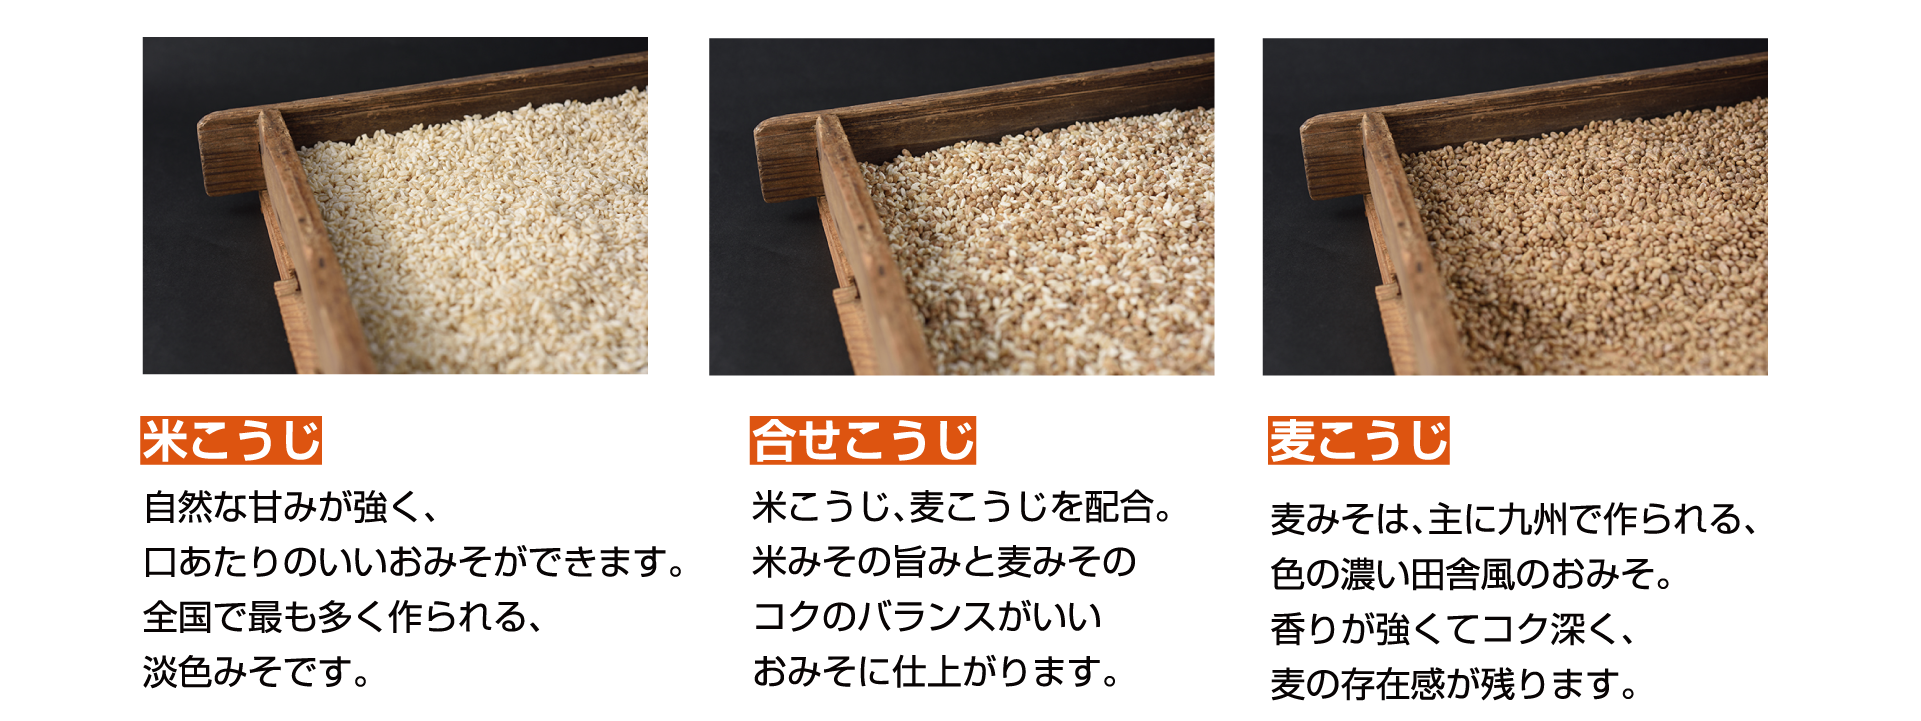 米こうじ　自然な甘みが強く、口あたりのいいおみそができます。全国で最も多く作られる、淡色みそです。合せこうじ　米こうじ、麦こうじを配合。米みその旨みと麦みそのコクのバランスがいいおみそに仕上がります。麦こうじ　麦みそは、主に九州で作られる、色の濃い田舎風のおみそ。香りが強くてコク深く、麦の存在感が残ります。